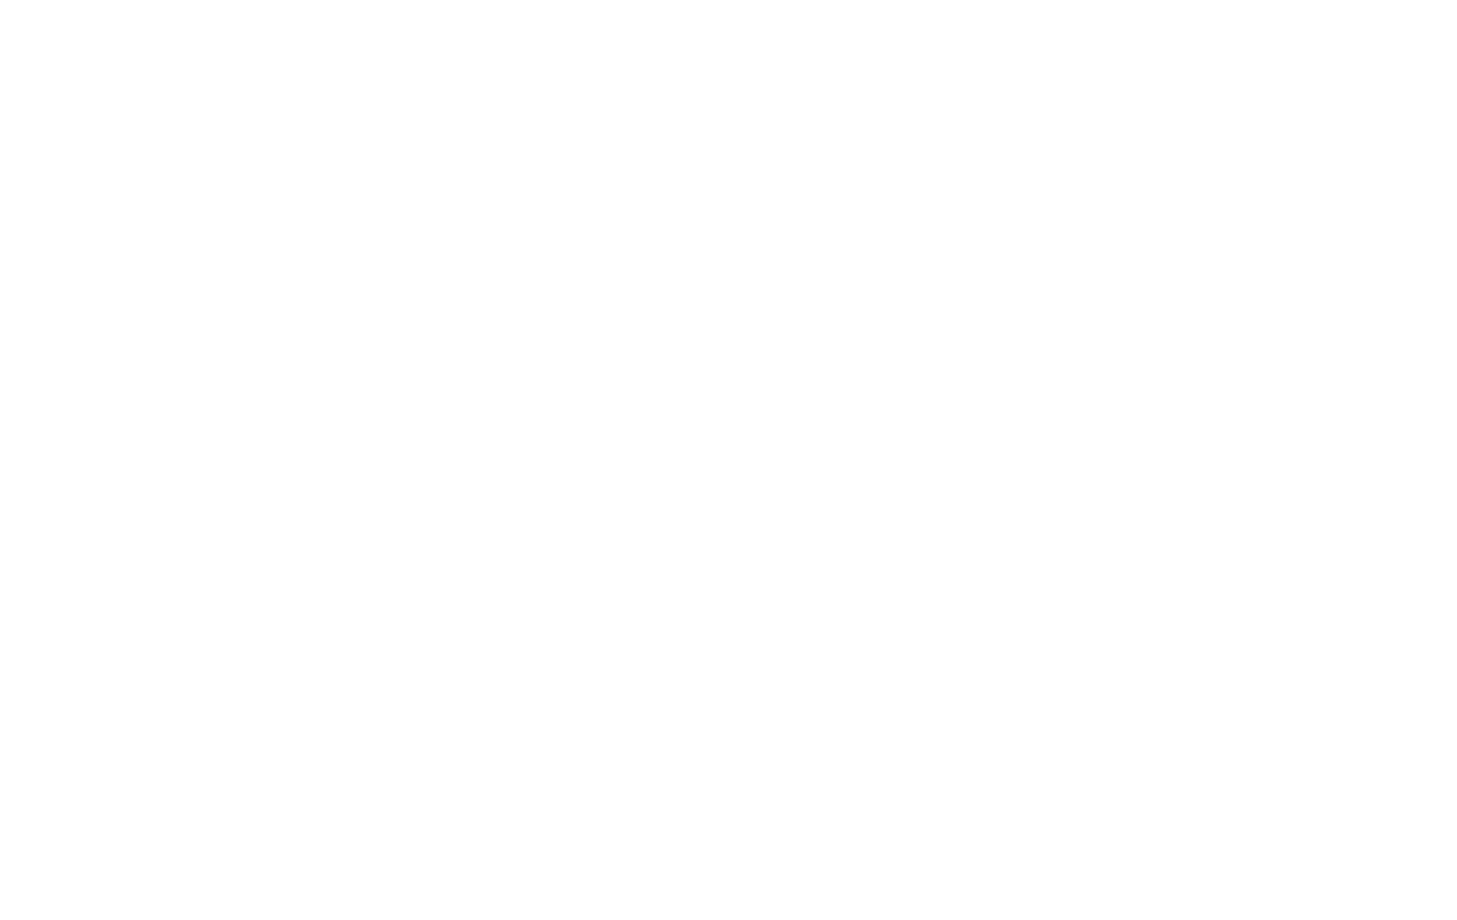 Hawker Motors